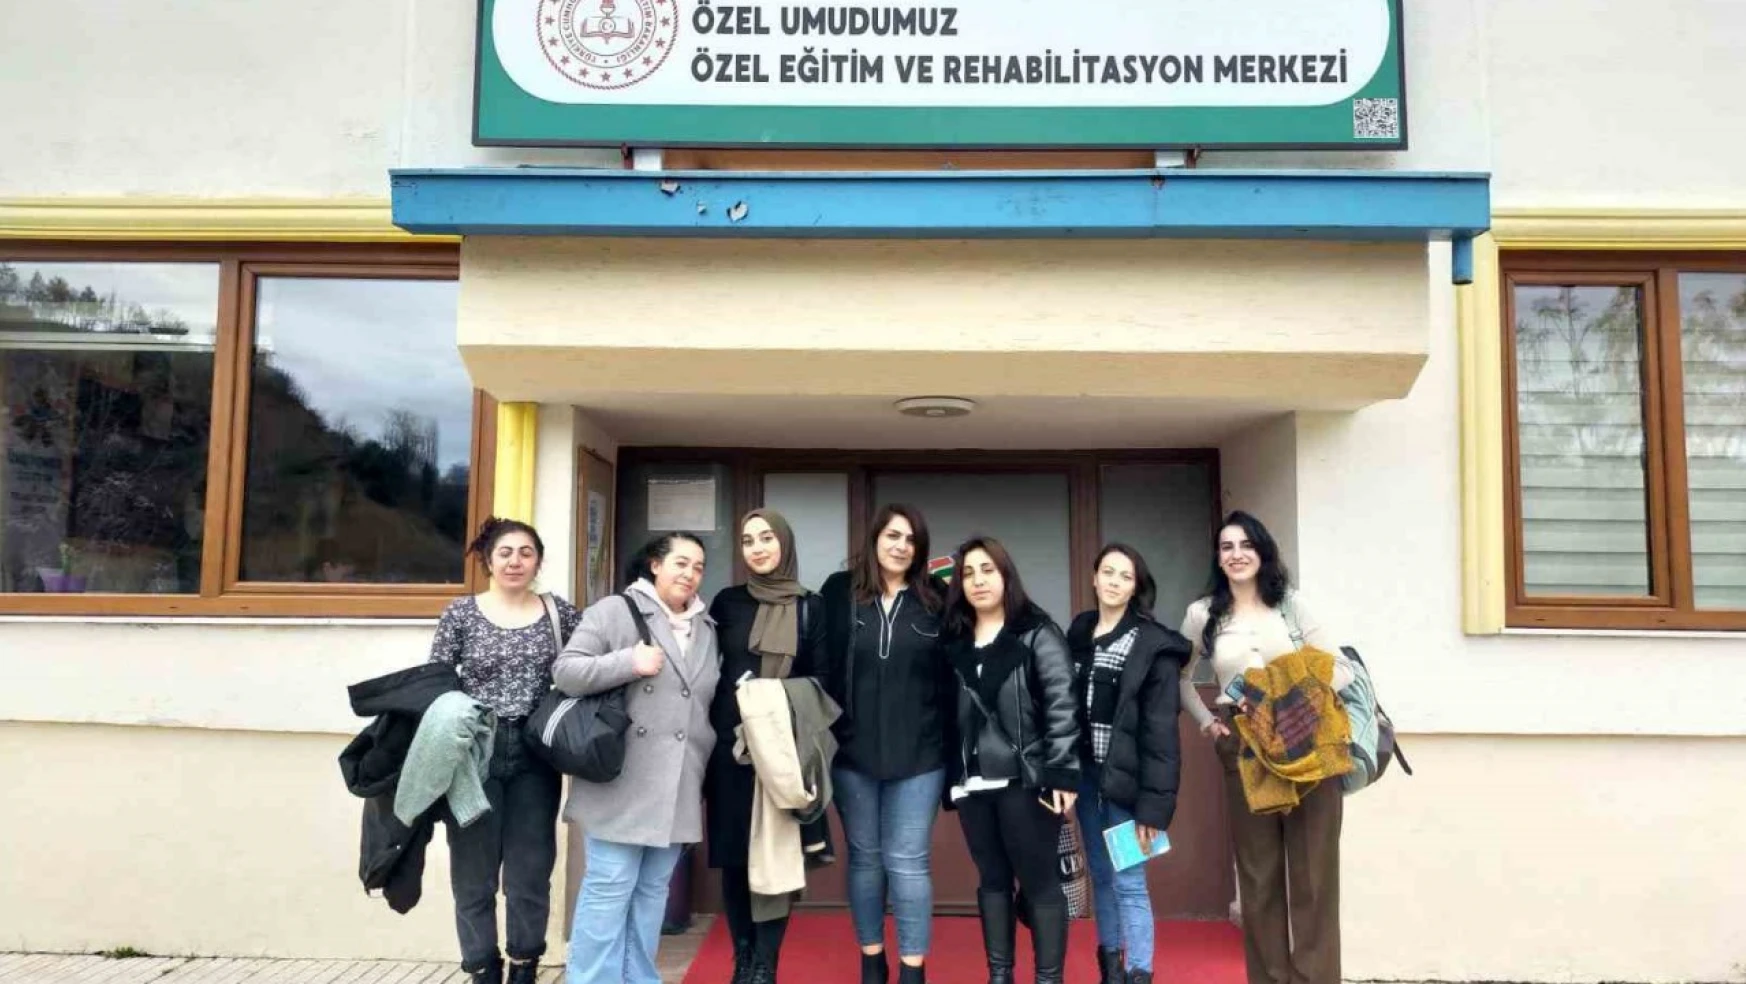 Üniversite öğrencilerinden rehabilitasyon merkezine 'Gönüllülük' yolculuğu